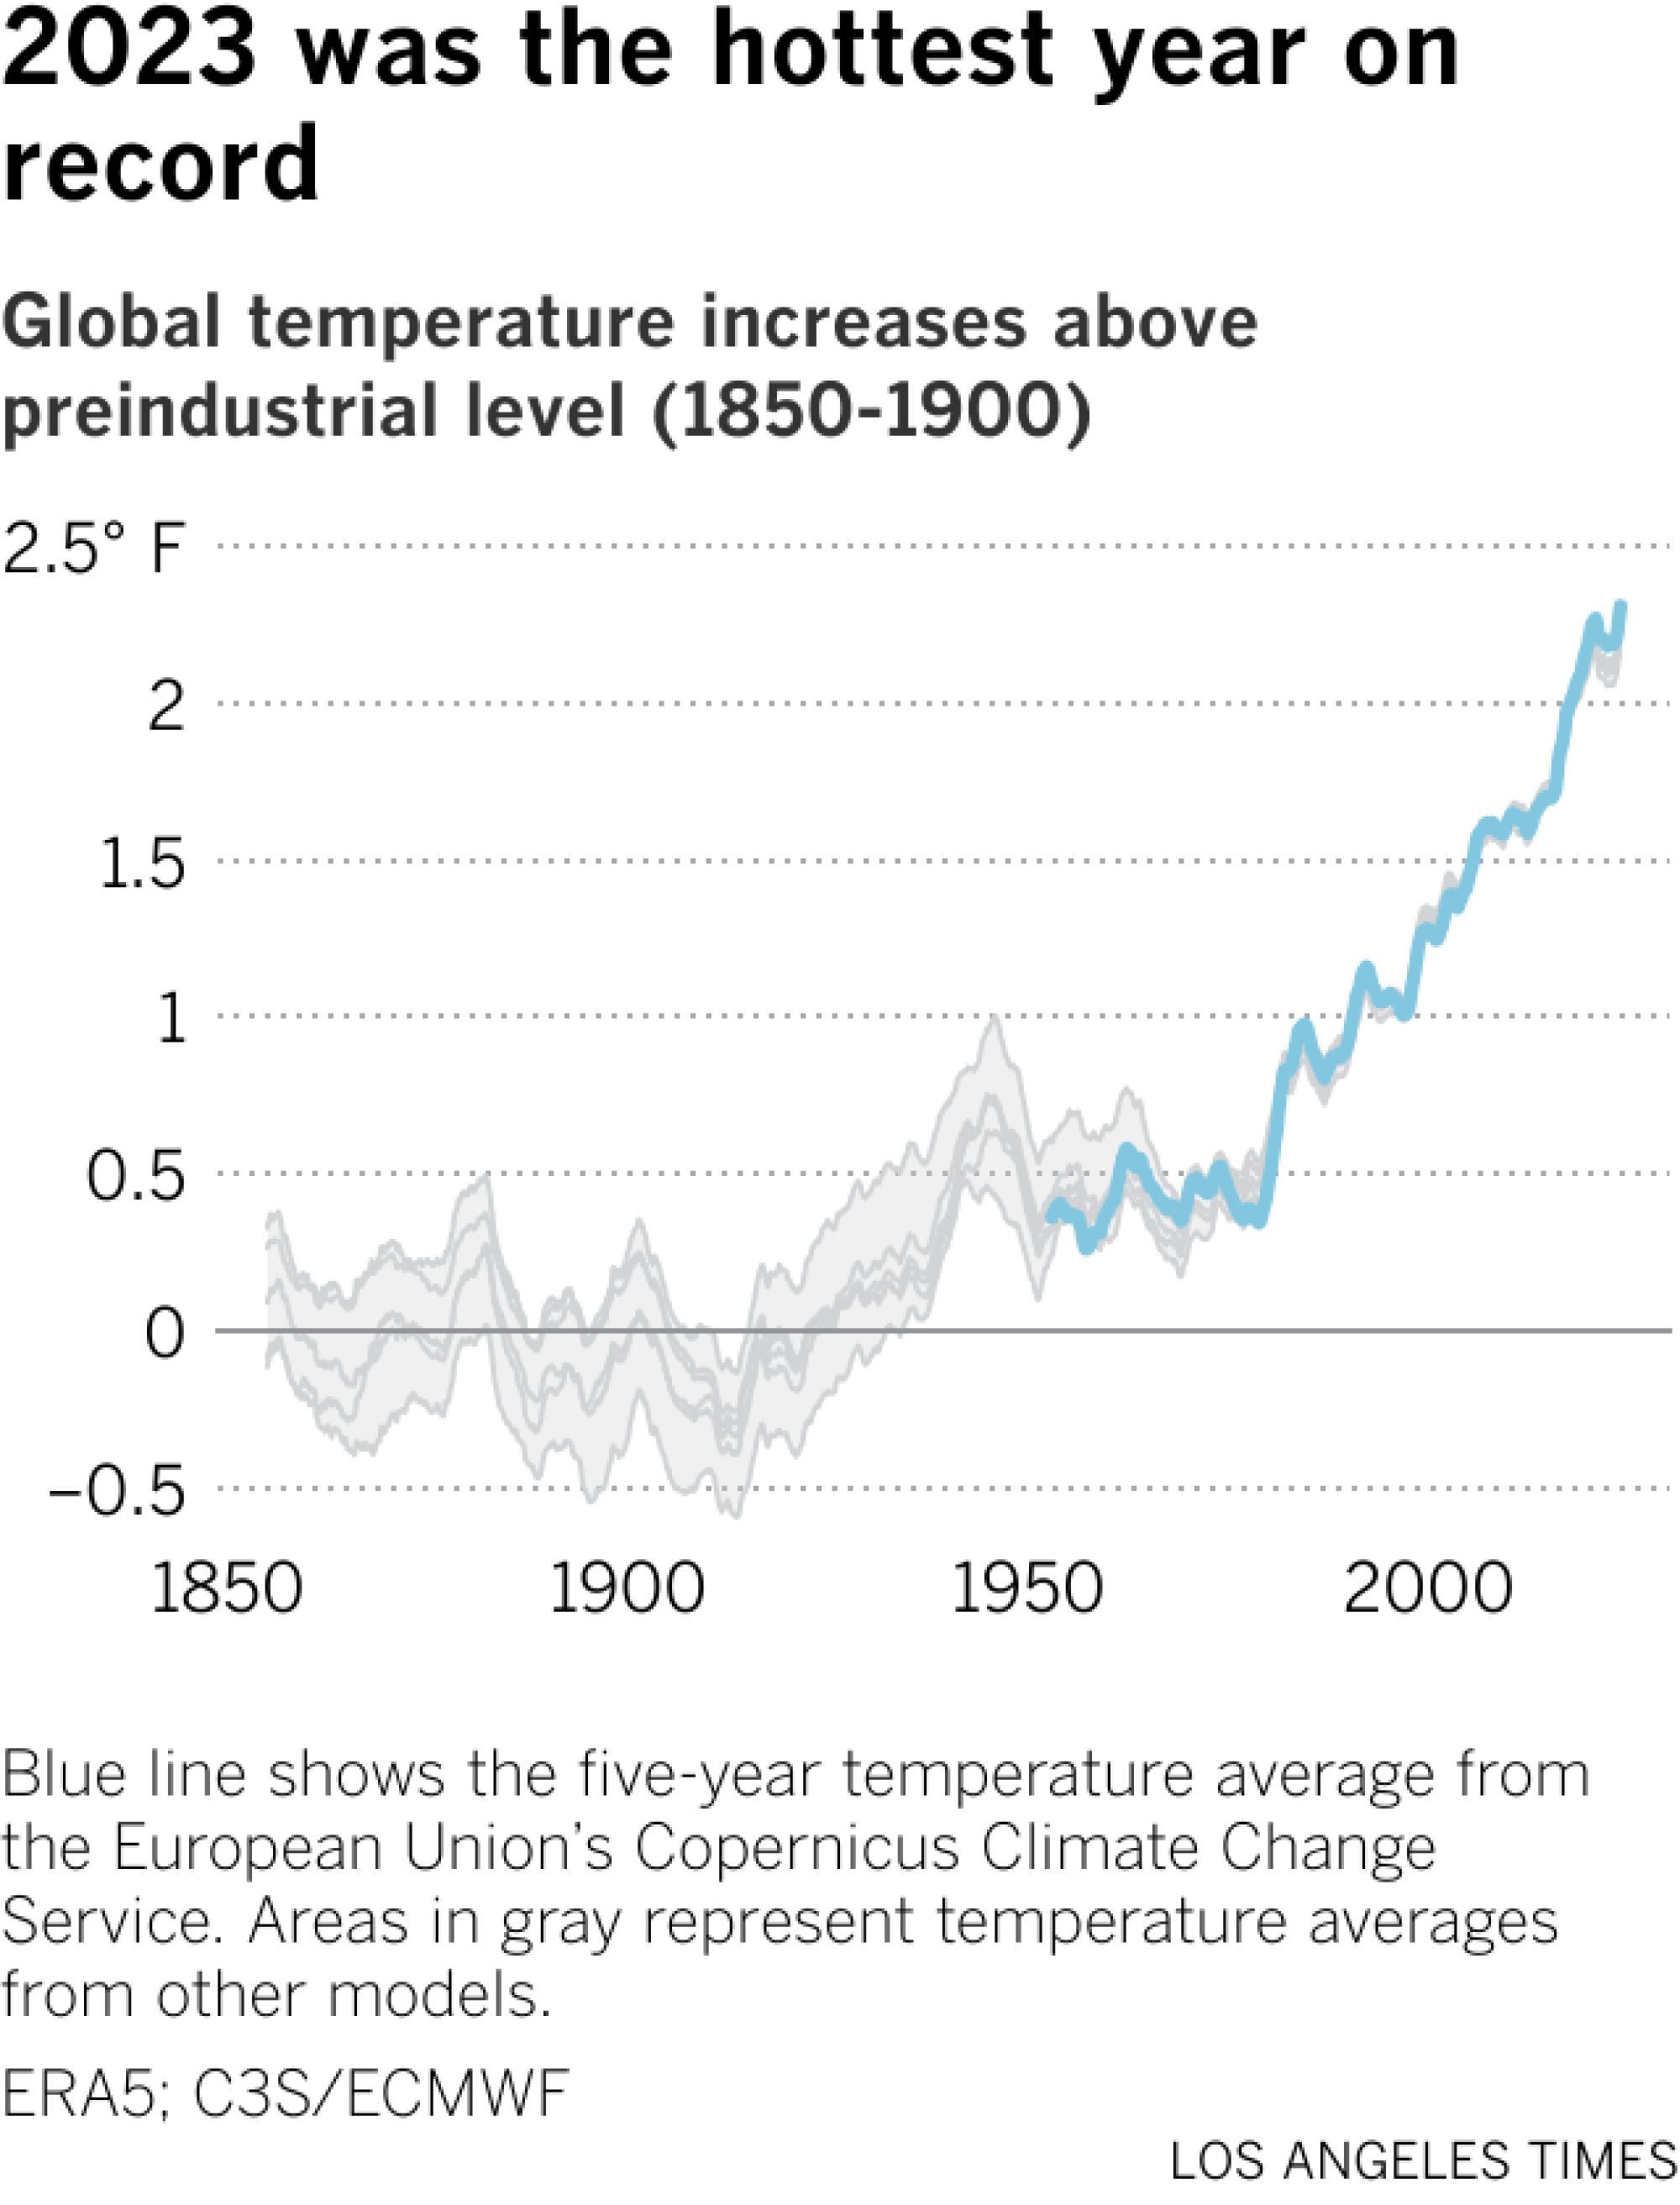 Das Liniendiagramm zeigt die von Kopernikus und anderen Quellen geschätzten durchschnittlichen Temperaturänderungen seit 1850. Die Temperaturen sind seit etwa 1975 stetig gestiegen.